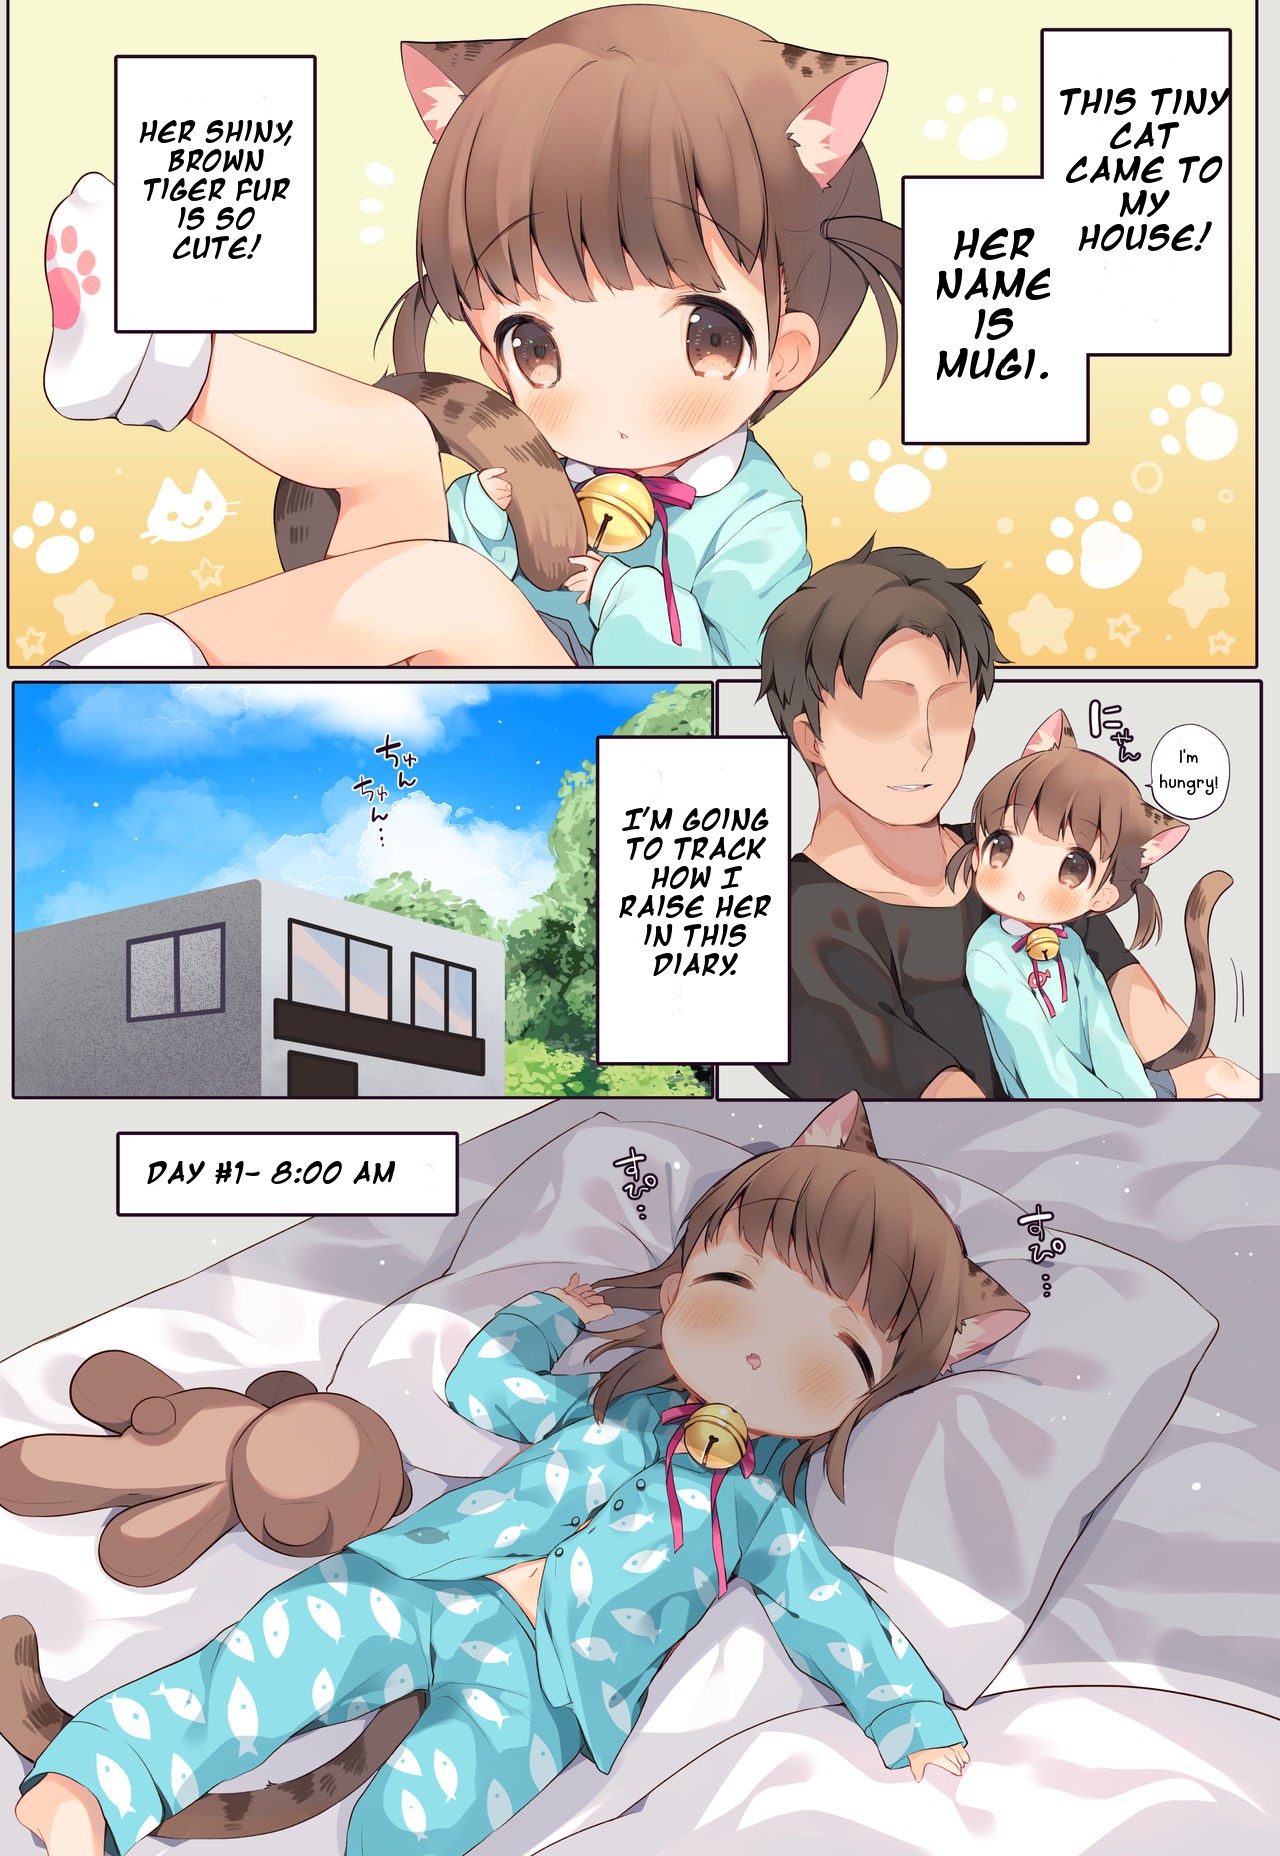 1280px x 1856px - Nyanko Ikusei Nikki Sono 1 | Kitten Raising Diary Part 1 - Page 4 -  HentaiEra